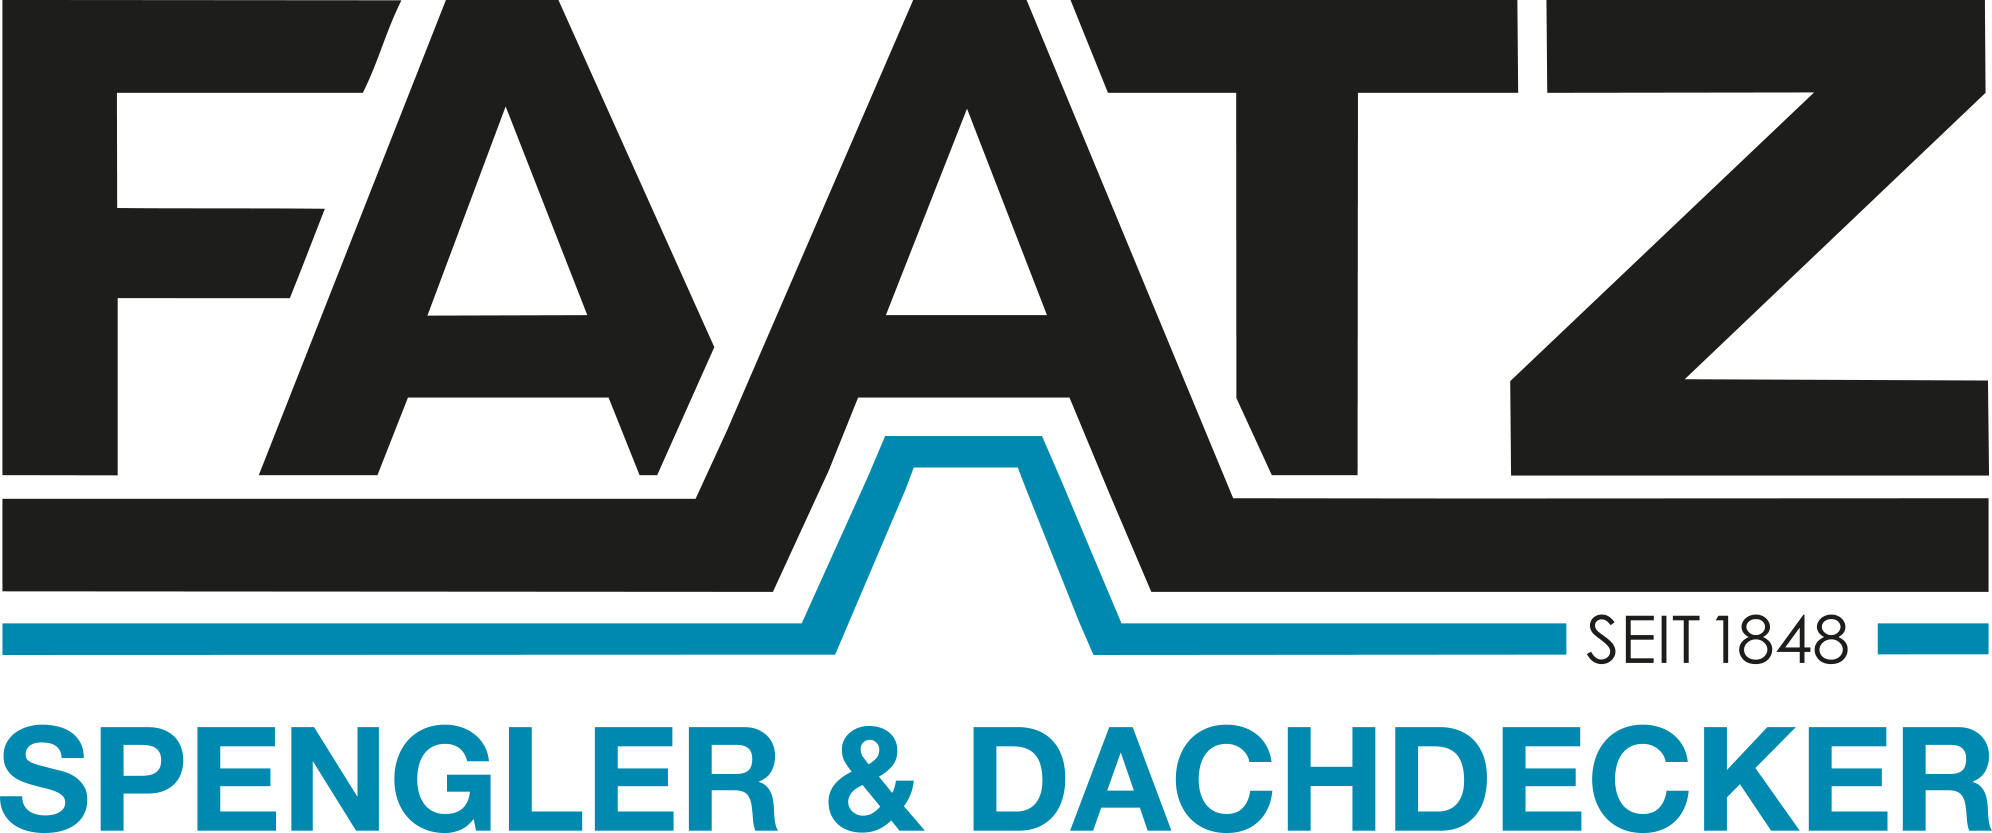 Logo Faatz